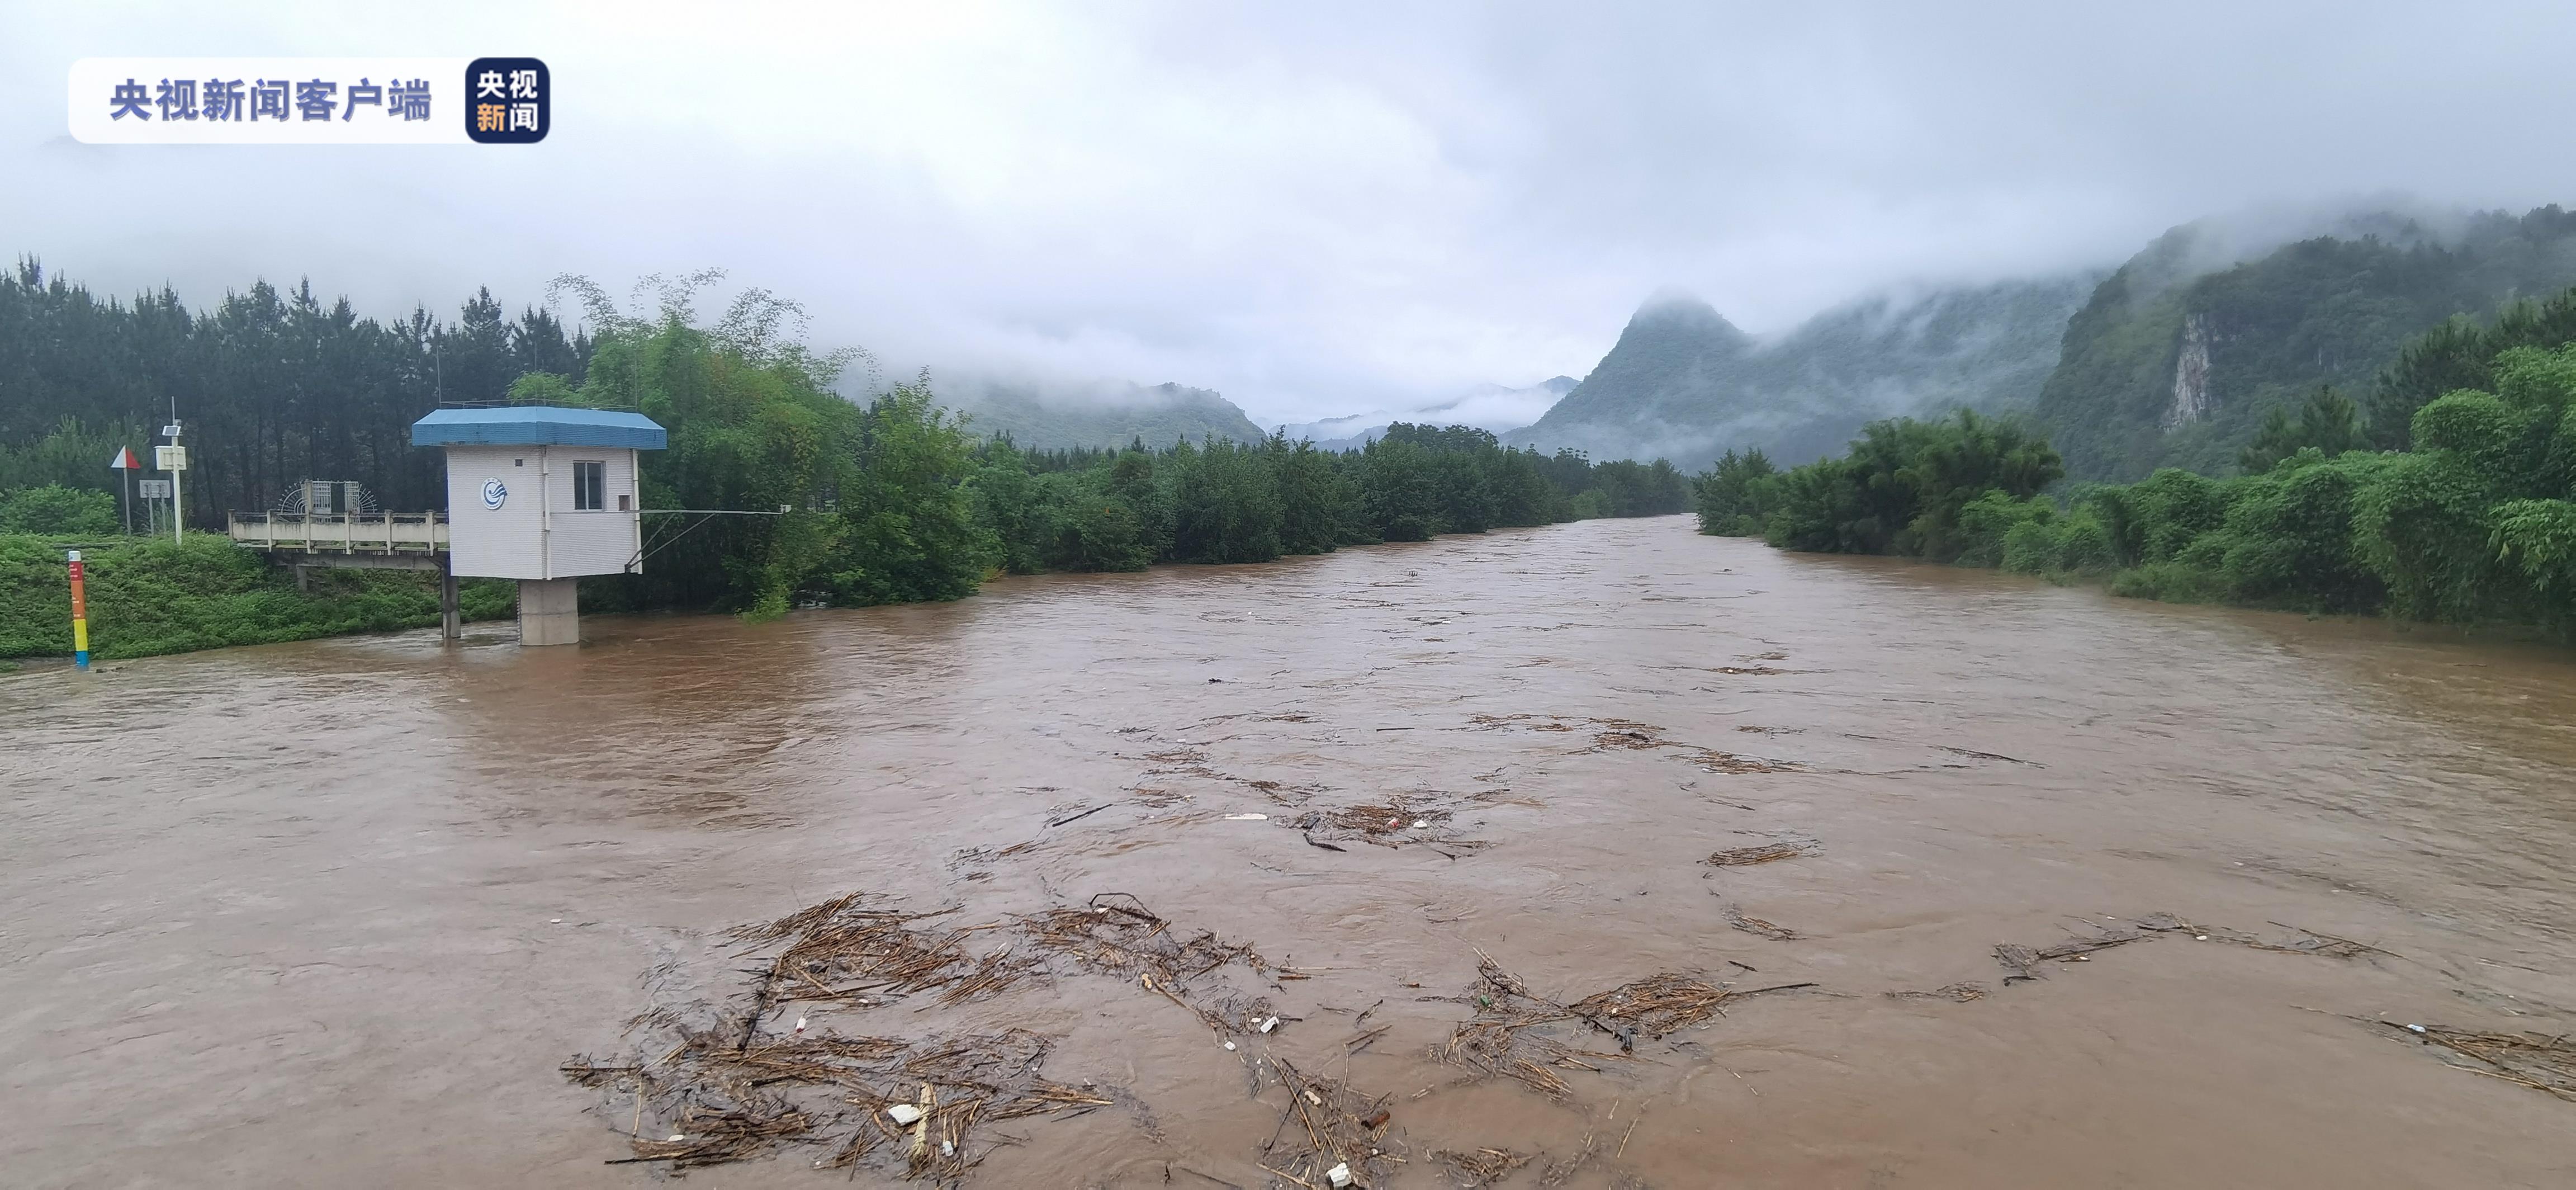 广东清远:暴雨持续 部分中小河流可能出现超警洪水